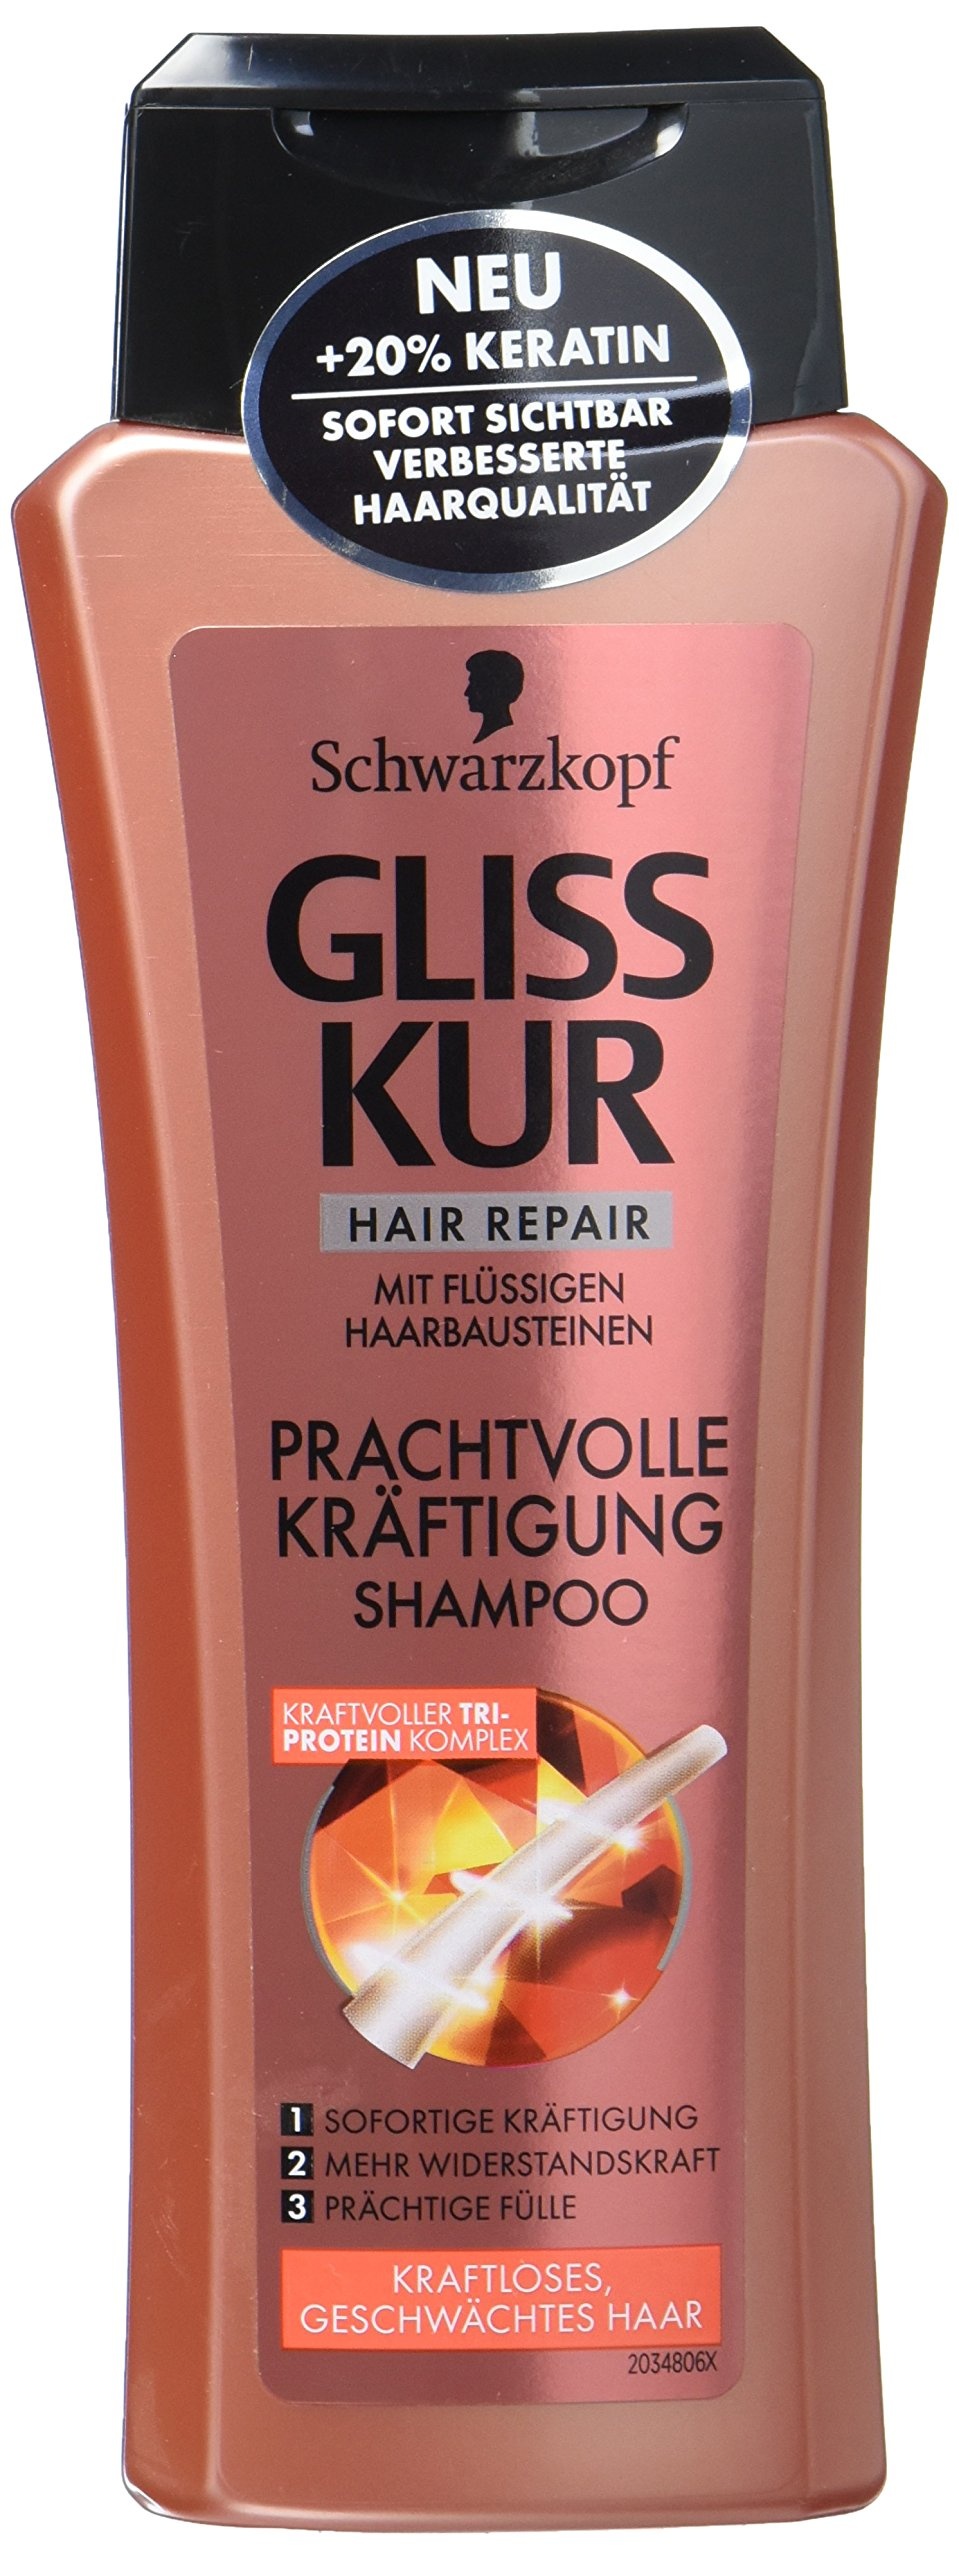 Schwarzkopf Gliss Kur Shampoo Prachtvolle Kräftigung, 250 ml